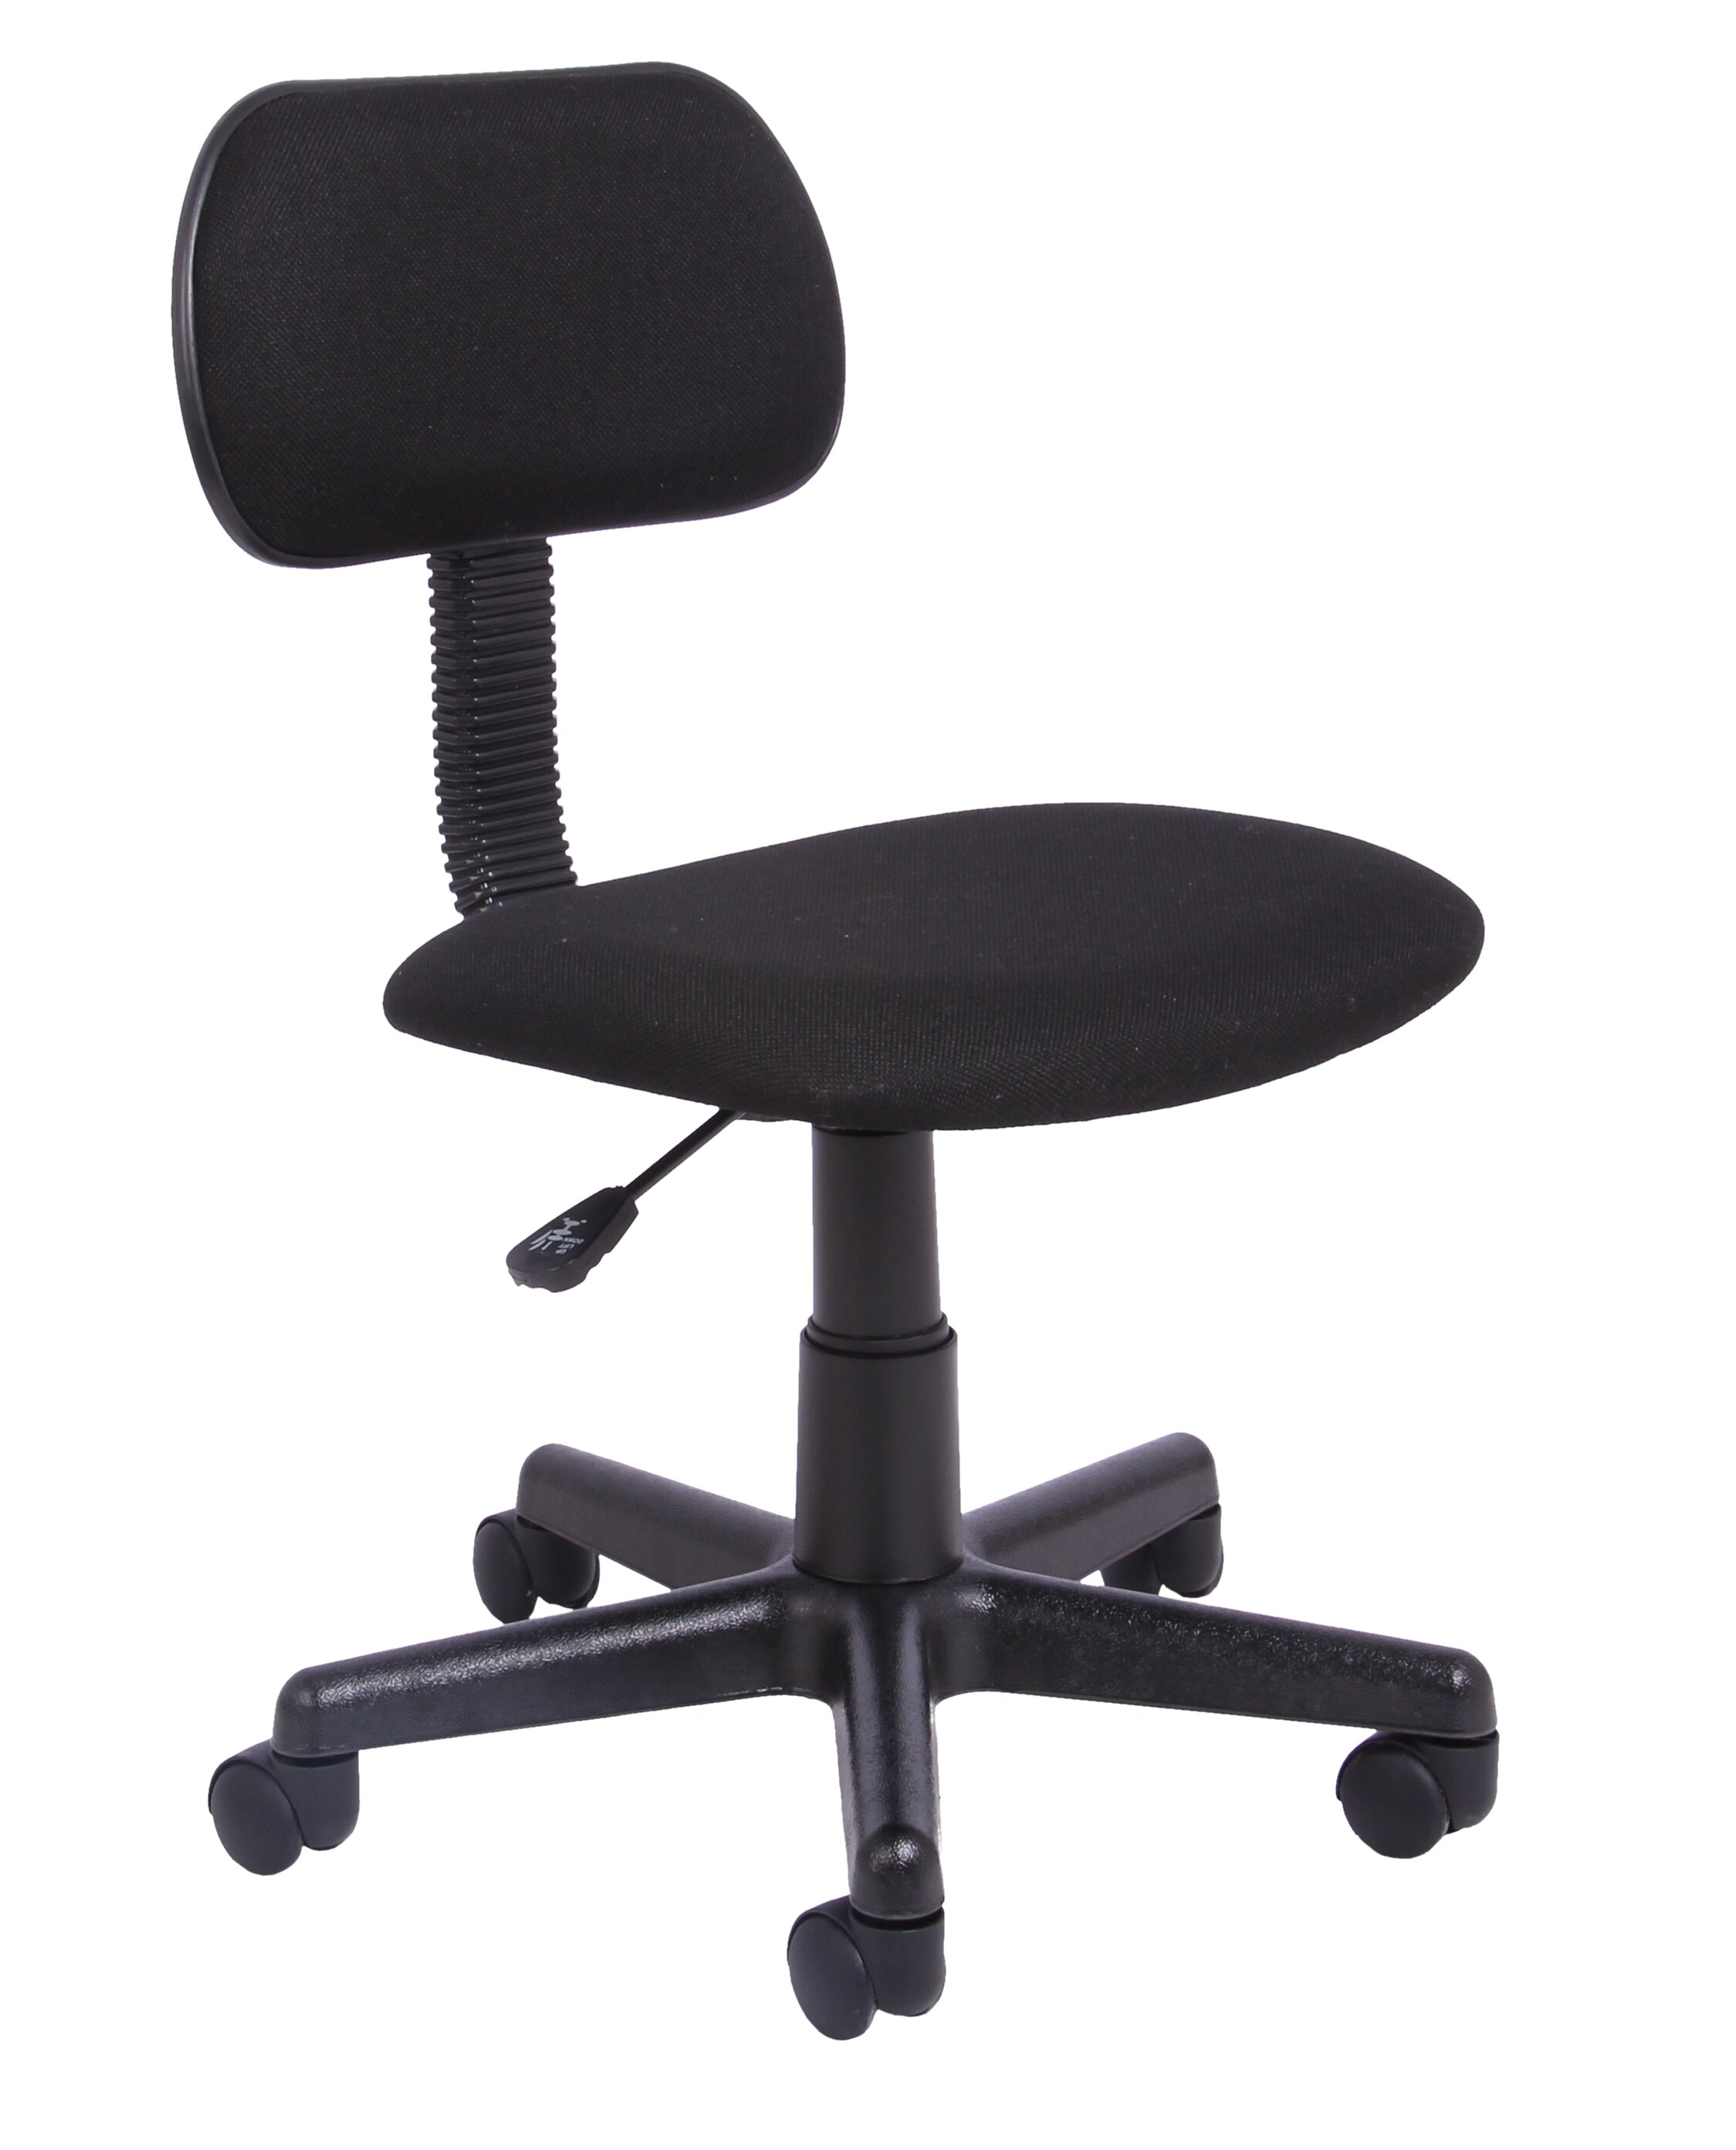 Symple Stuff Desk Chair Reviews Wayfair Co Uk